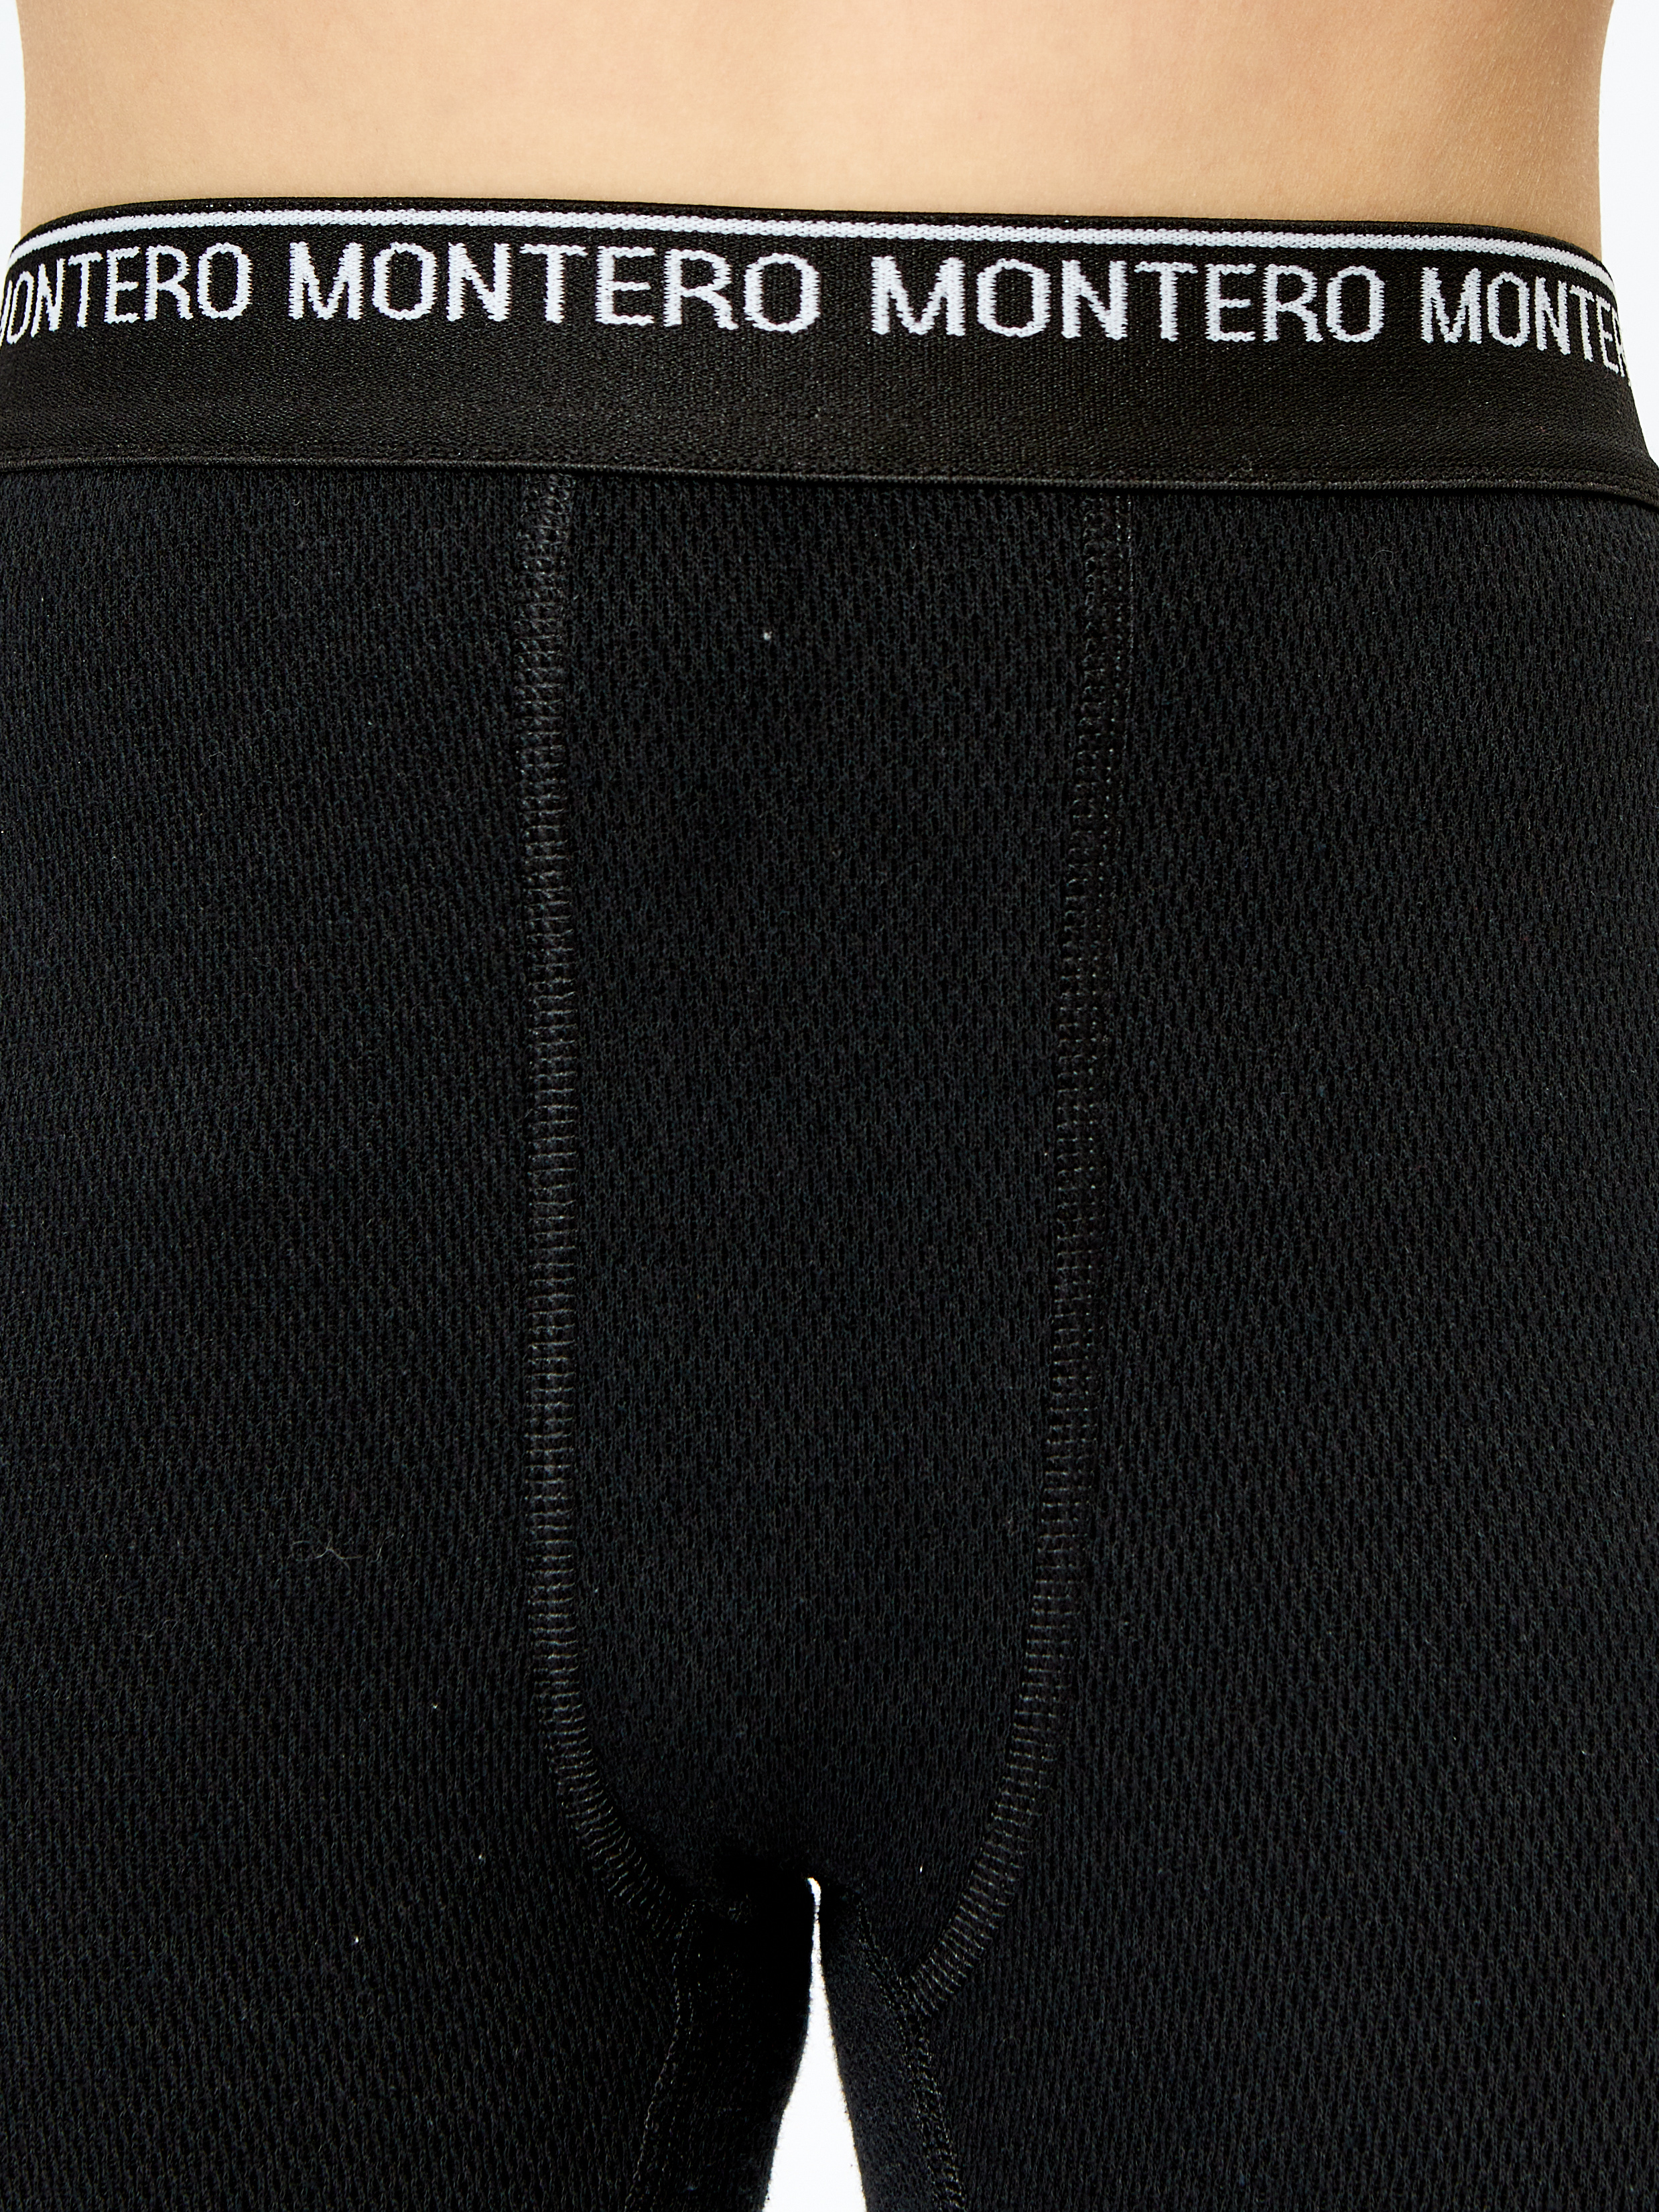 Кальсоны Montero Outdoor MCLCCB01/черный - фото 6